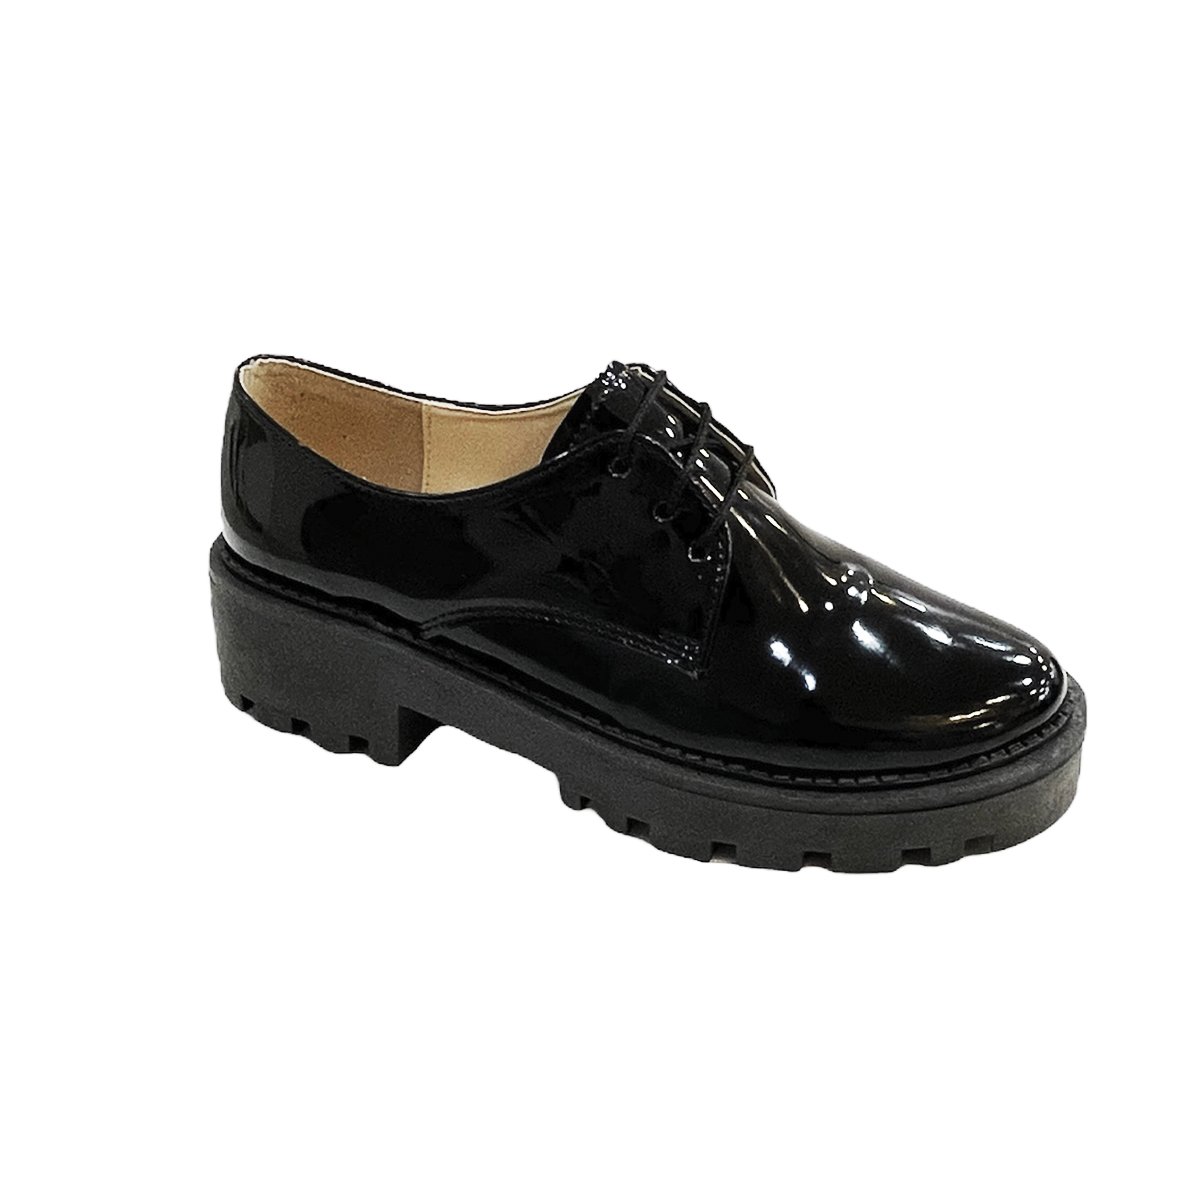 Zapatos Negros De Charol Con Plataforma Mujer Bap